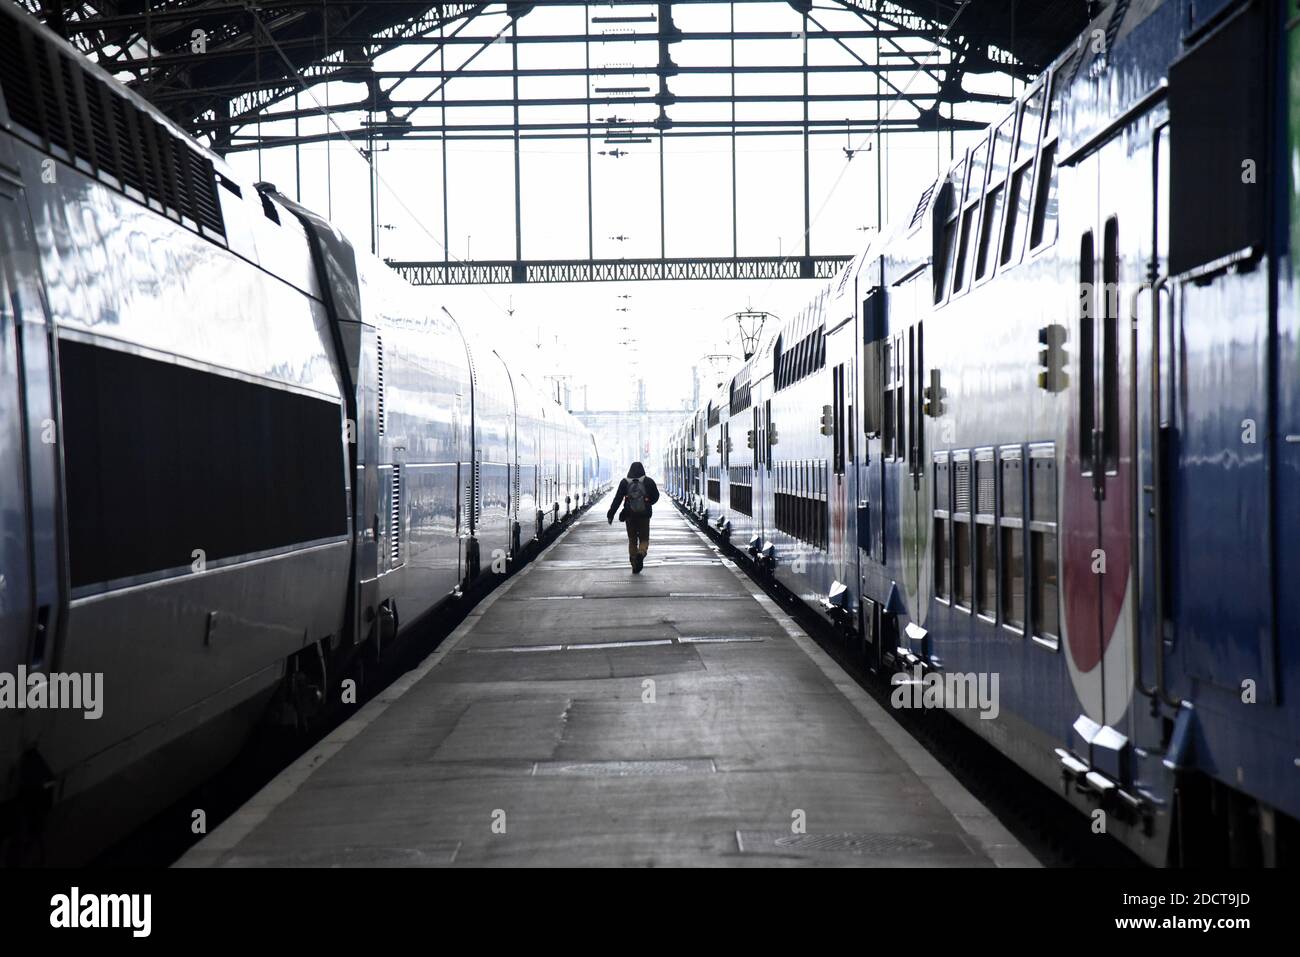 Allgemeine Ansicht des leeren TGV-Bahnhofs Gare De Lyon in Paris, Frankreich, am 9. April 2018, wo fast alle Hochgeschwindigkeitszüge wegen des Streiks abgesagt werden. Die französischen Bahnarbeiter von SNCF und RER begannen drei Monate rollende Streiks, die Teil einer Welle von Arbeitskampfmaßnahmen sind, die Präsident Emmanuel Macrons Entschlossenheit, Frankreich mit umfassenden Reformen neu zu gestalten, auf die Probe stellen wird. Der Streik wird zu Chaos für die 4.5 Millionen französischen Zugpassagiere führen, wobei zwei von fünf Tagen bis Juni 28 Stops geplant sind, es sei denn, Macron lässt sein Angebot fallen, eine Generalüberholung beim staatlichen Eisenbahnunternehmen SNCF zu erzwingen. Foto von Stockfoto